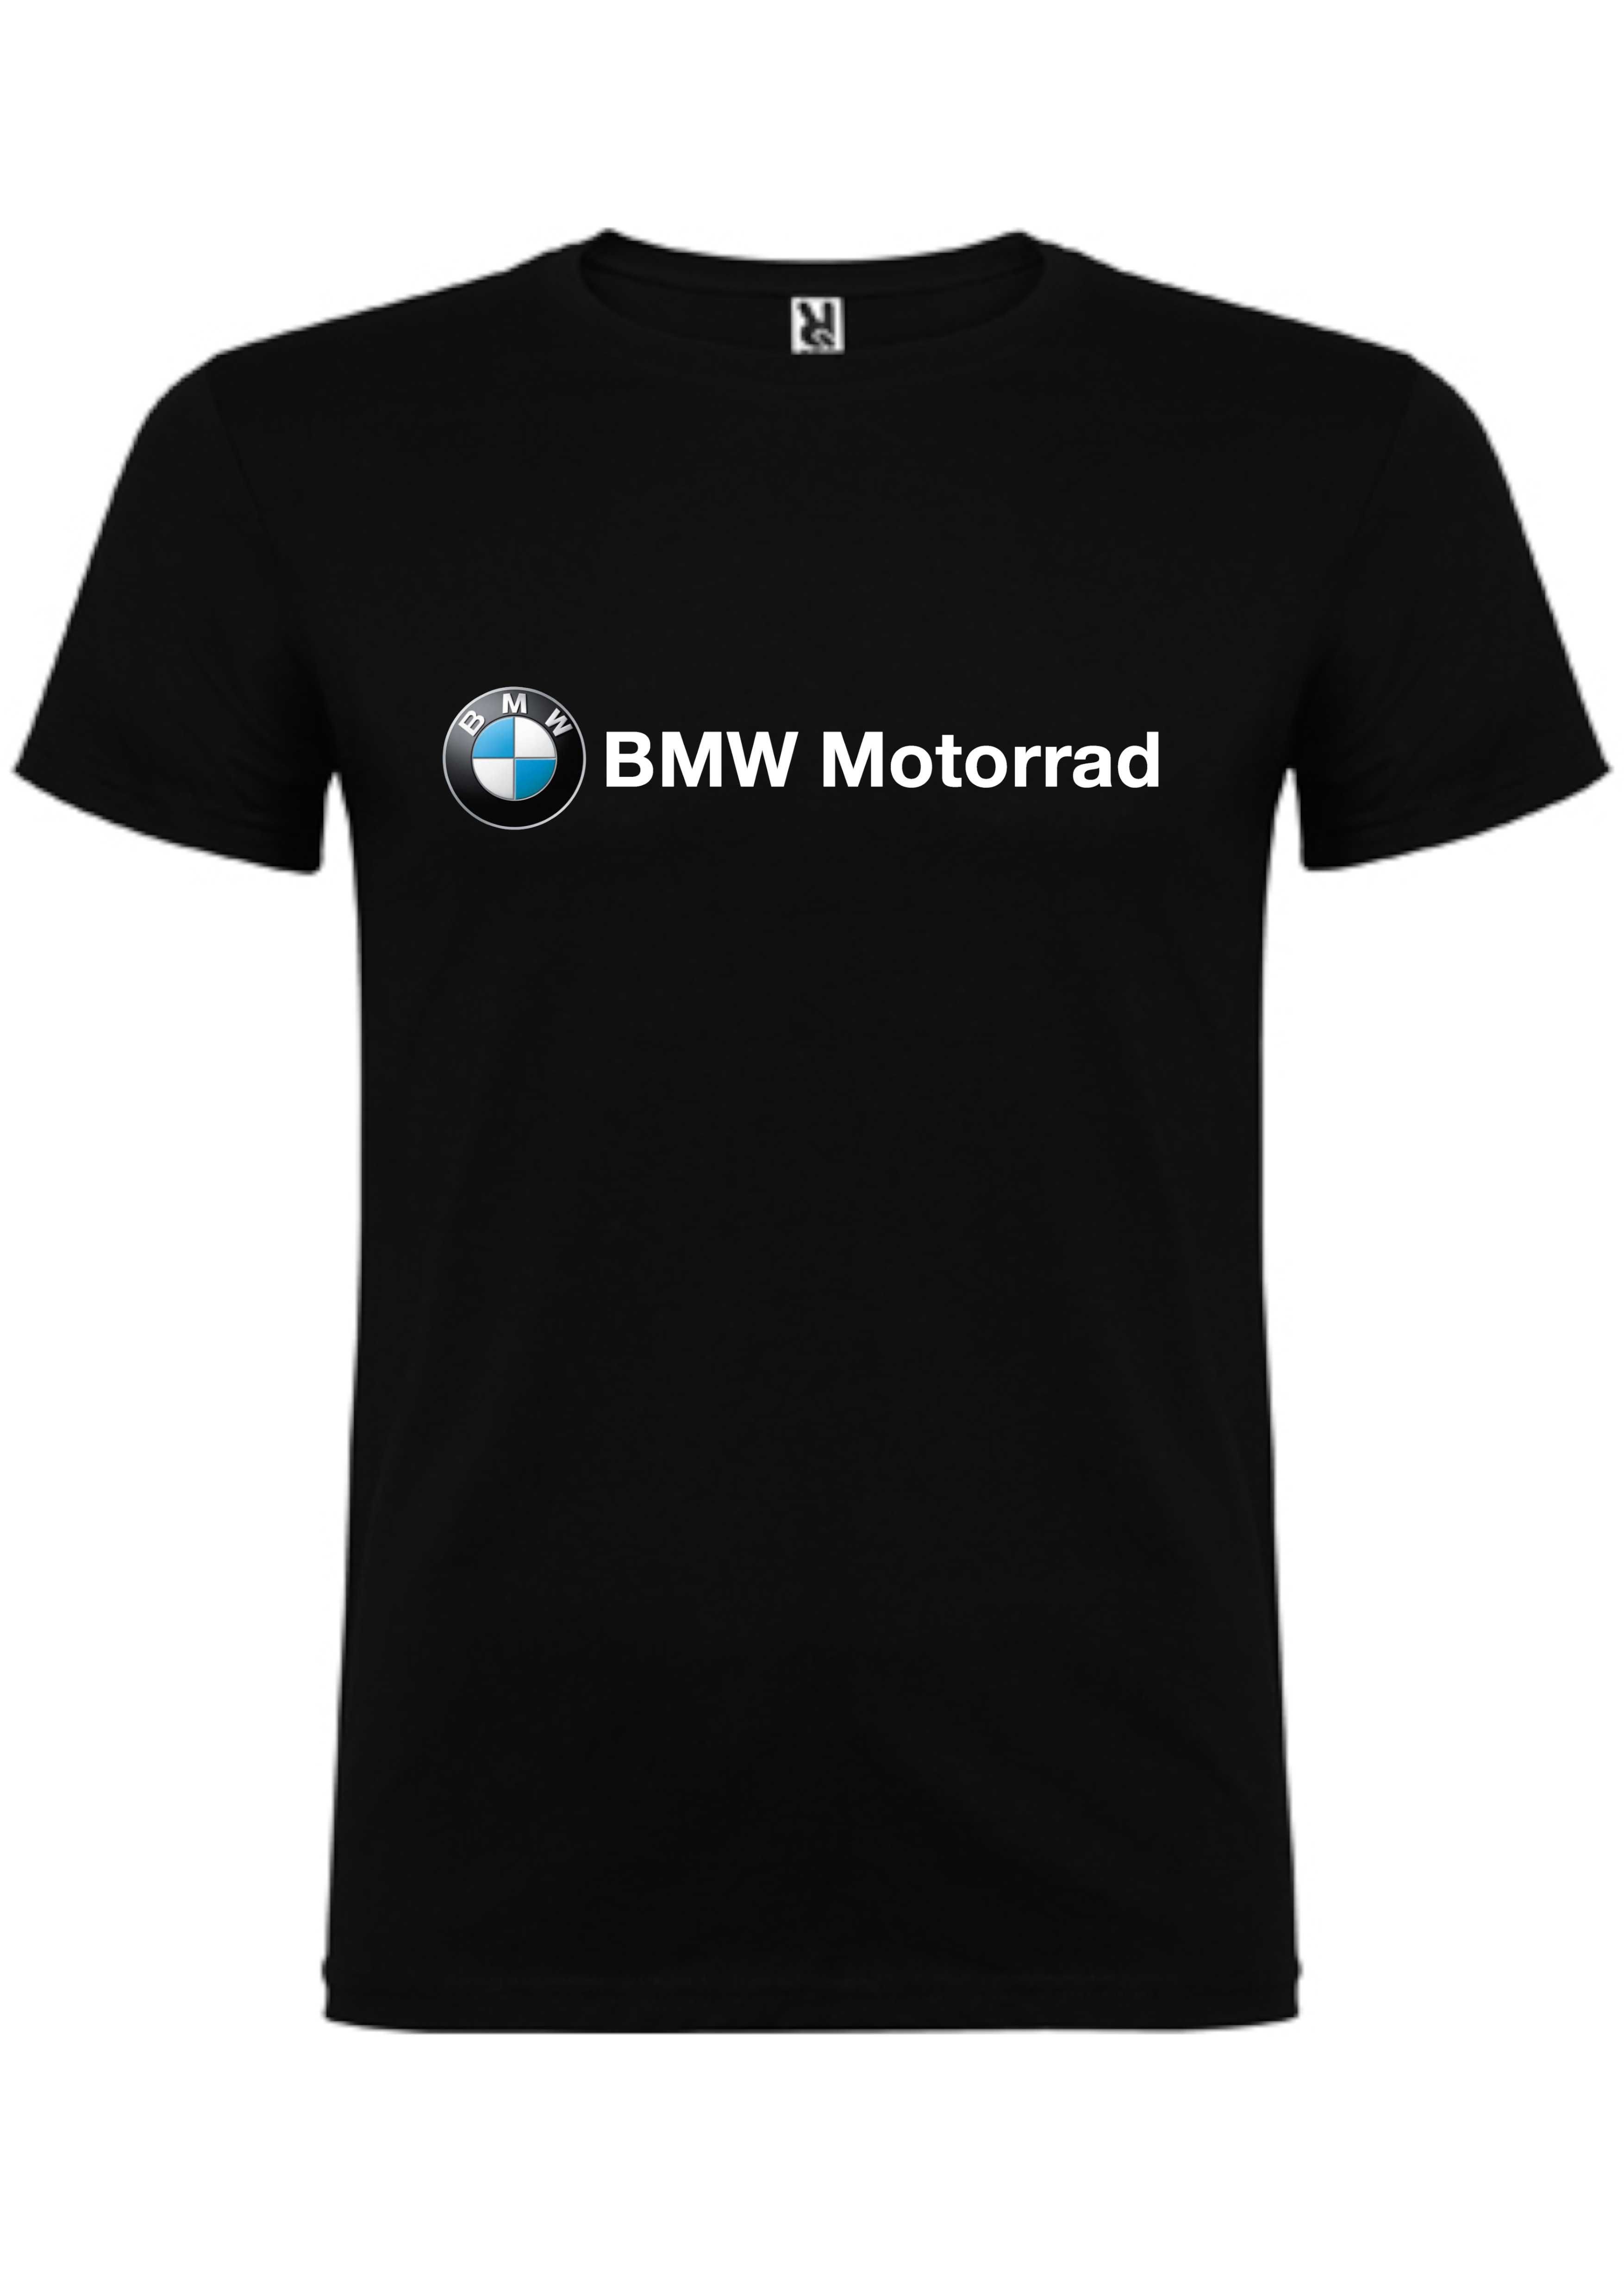 T-shirt BMW Motorrad Rosa dos ventos "MAKE LIFE A RIDE"